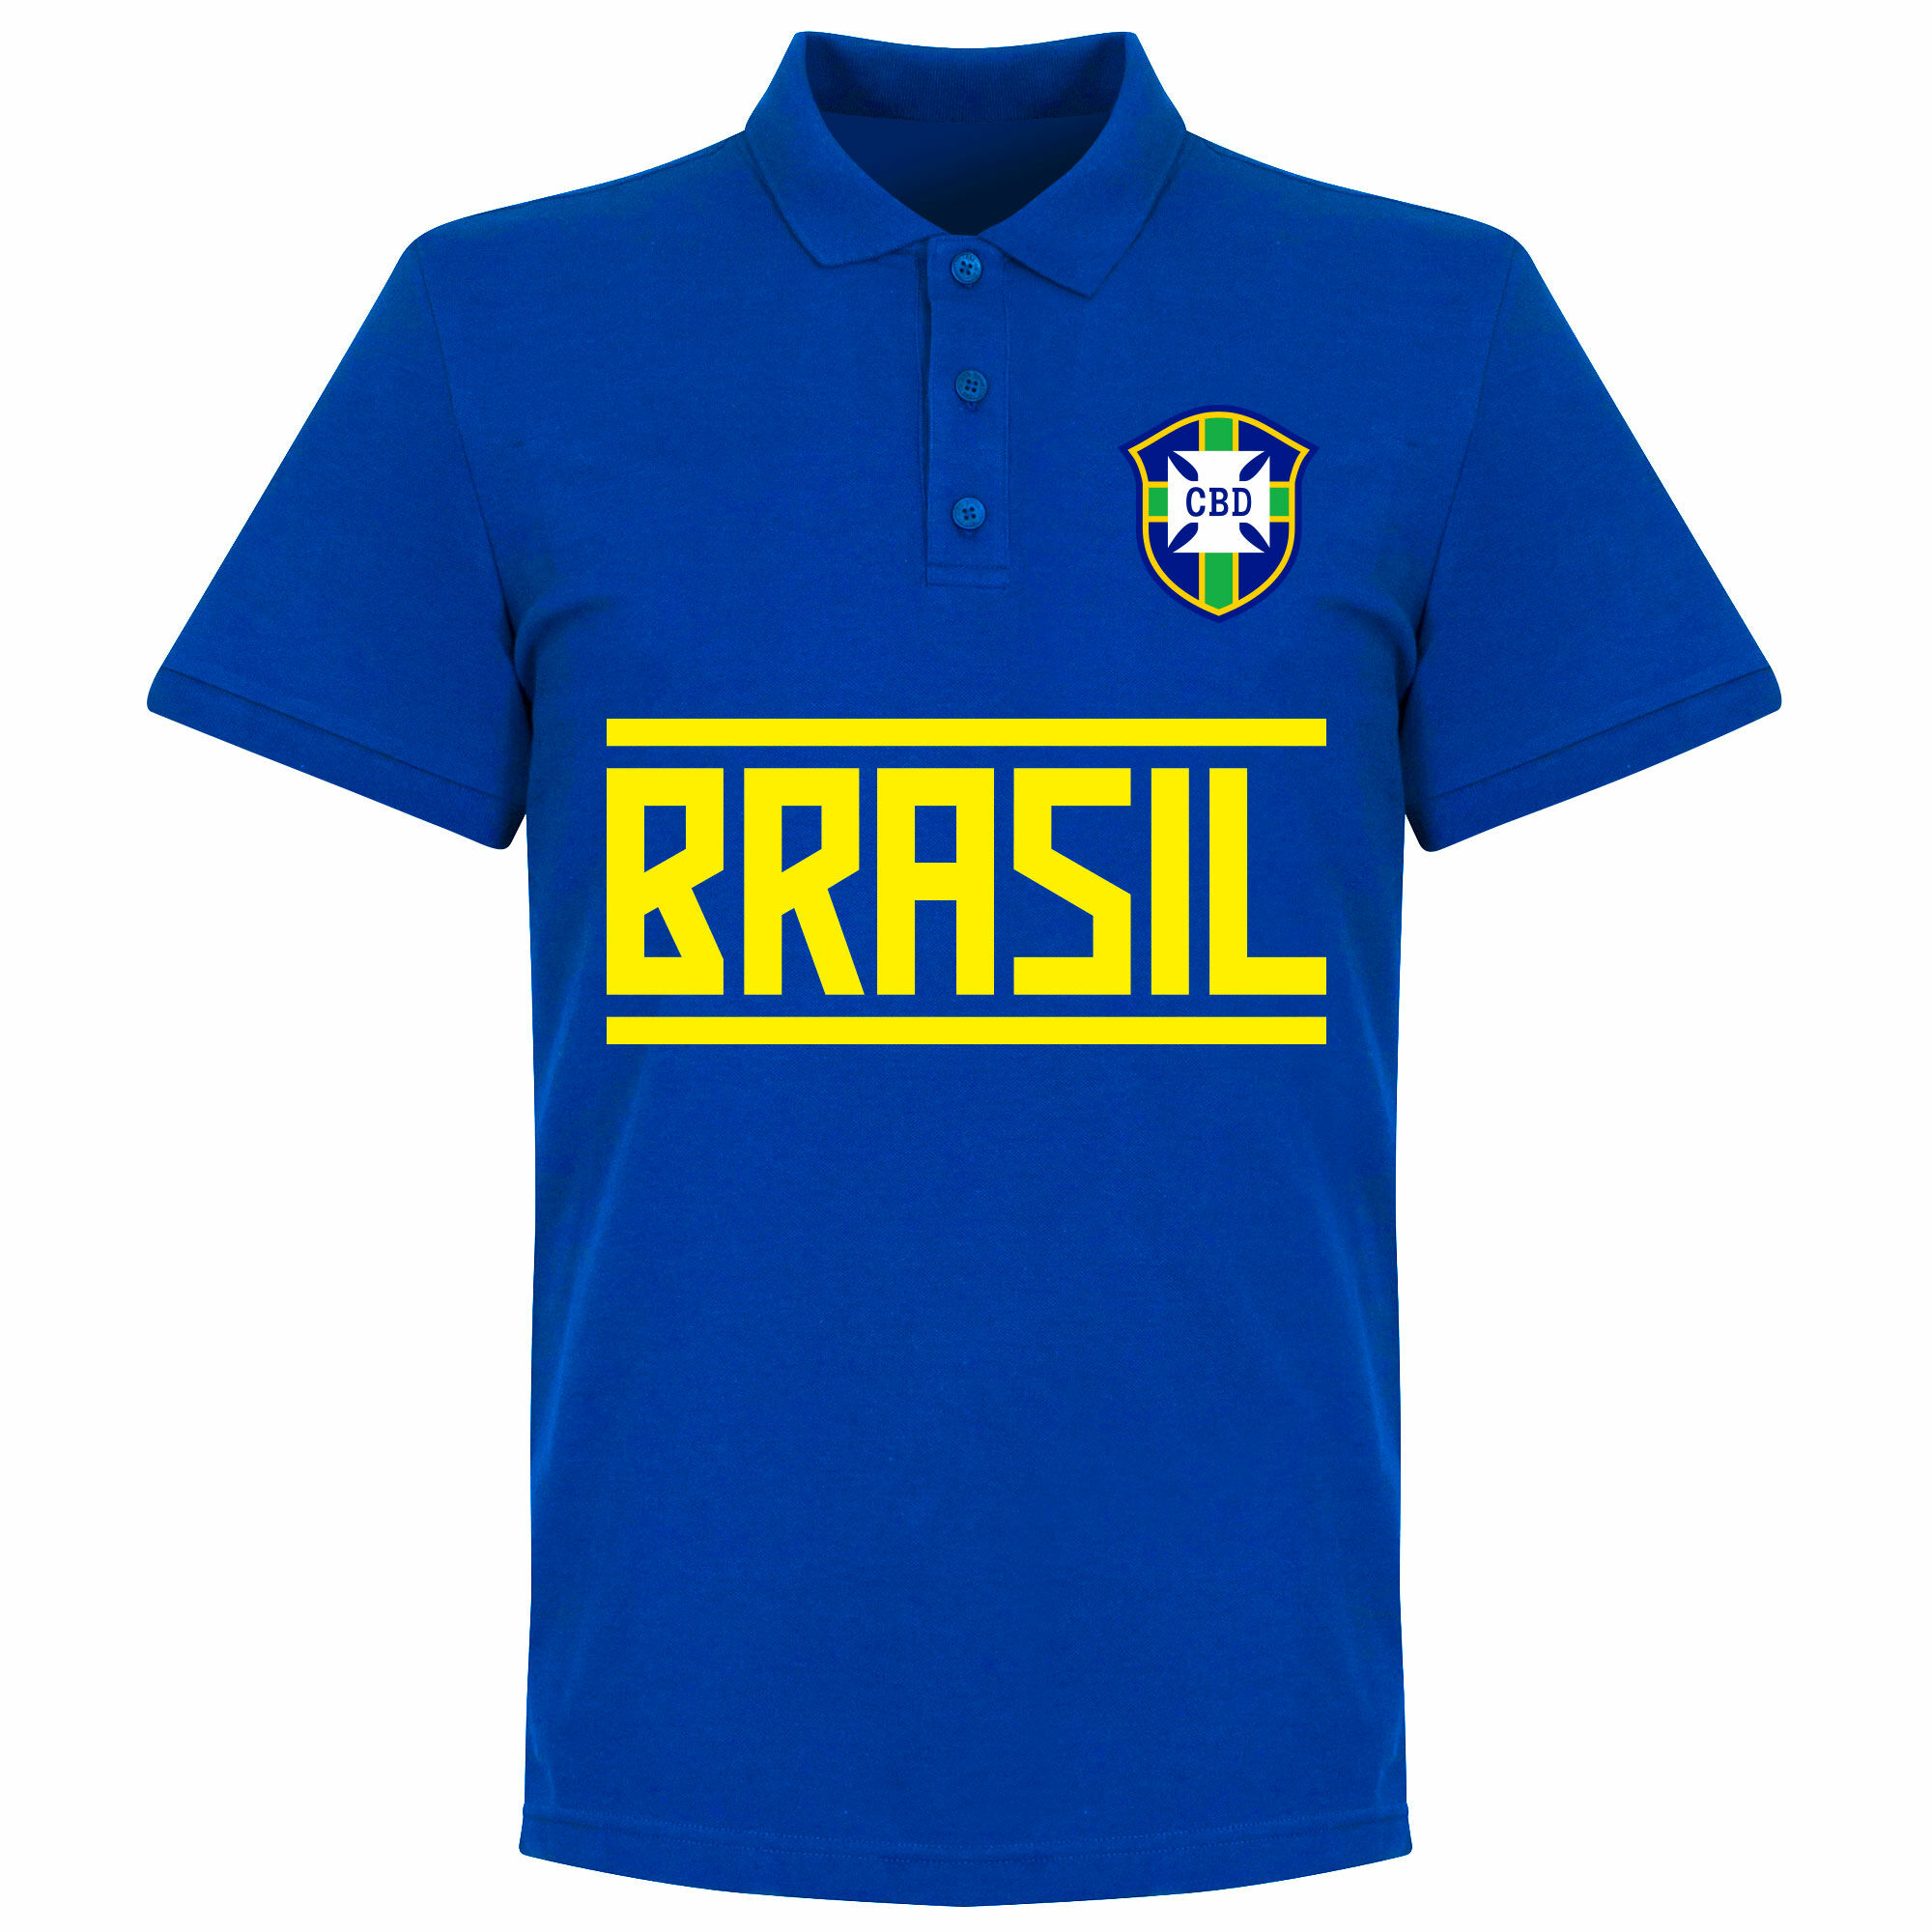 Brazílie - Tričko s límečkem - modré